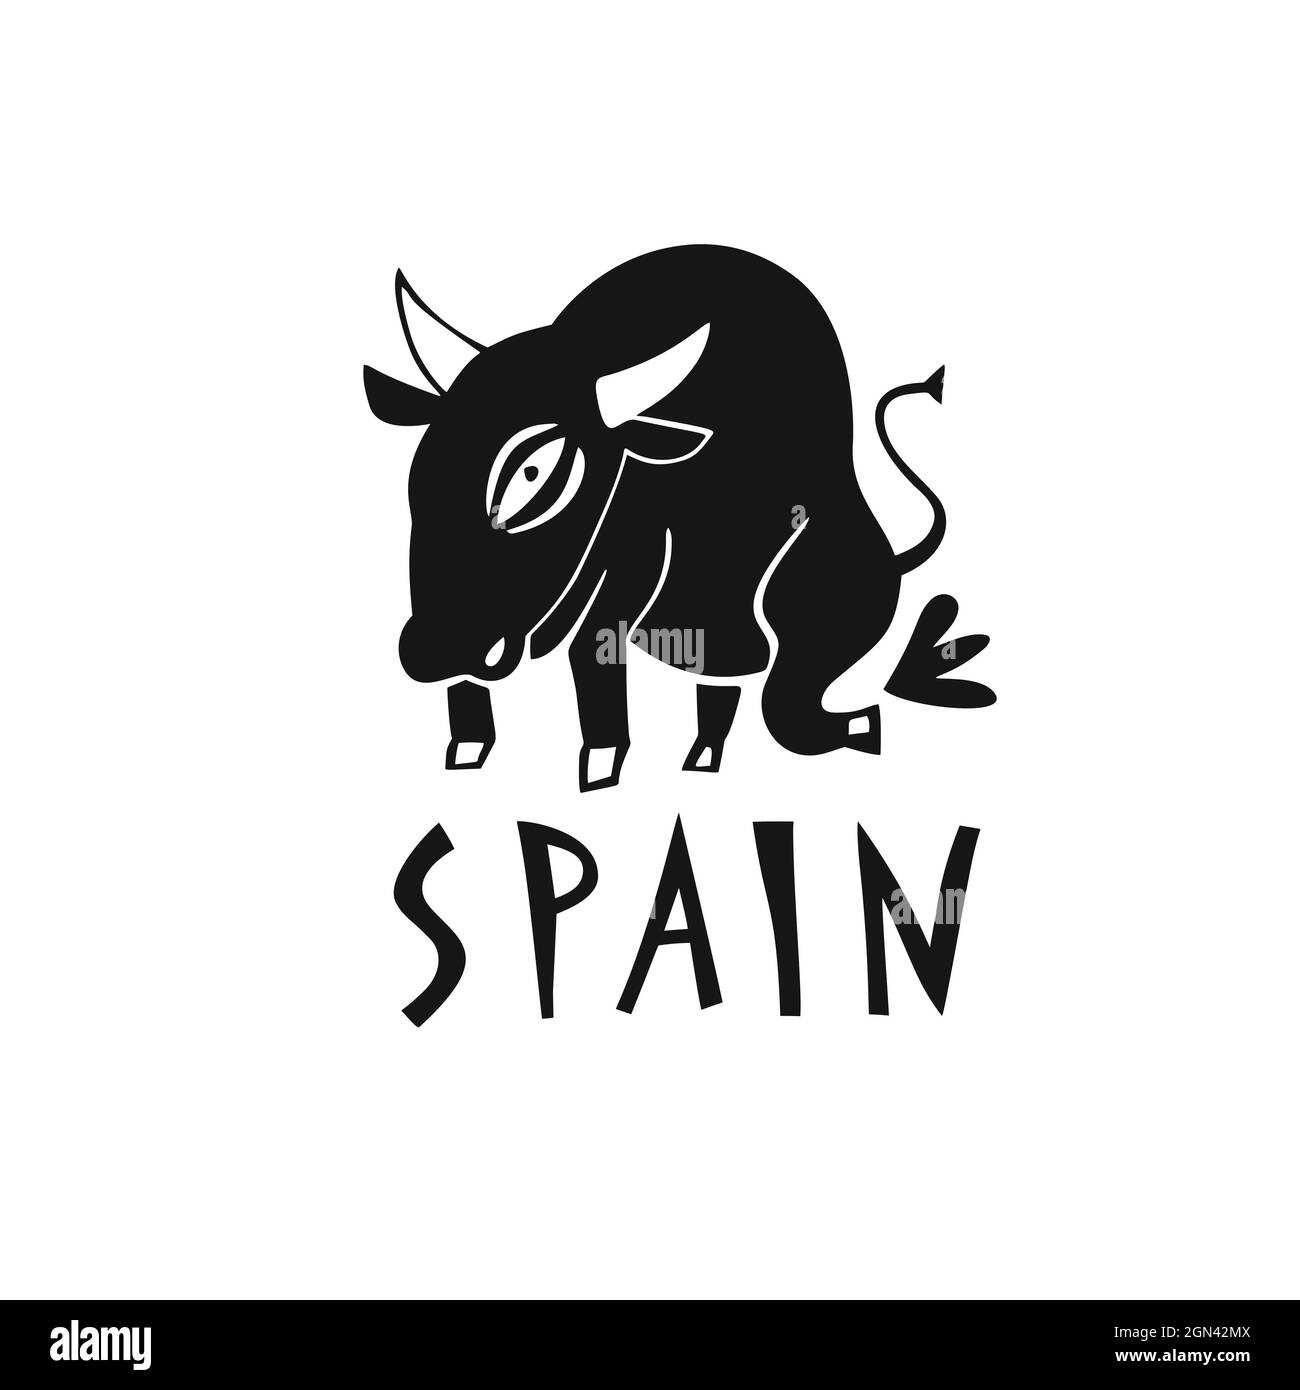 Symbole vectoriel dessiné à la main de l'Espagne. Illustration de voyage du taureau d'Espagne. Illustration avec lettrage dessiné à la main. Logo du site d'intérêt espagnol Illustration de Vecteur